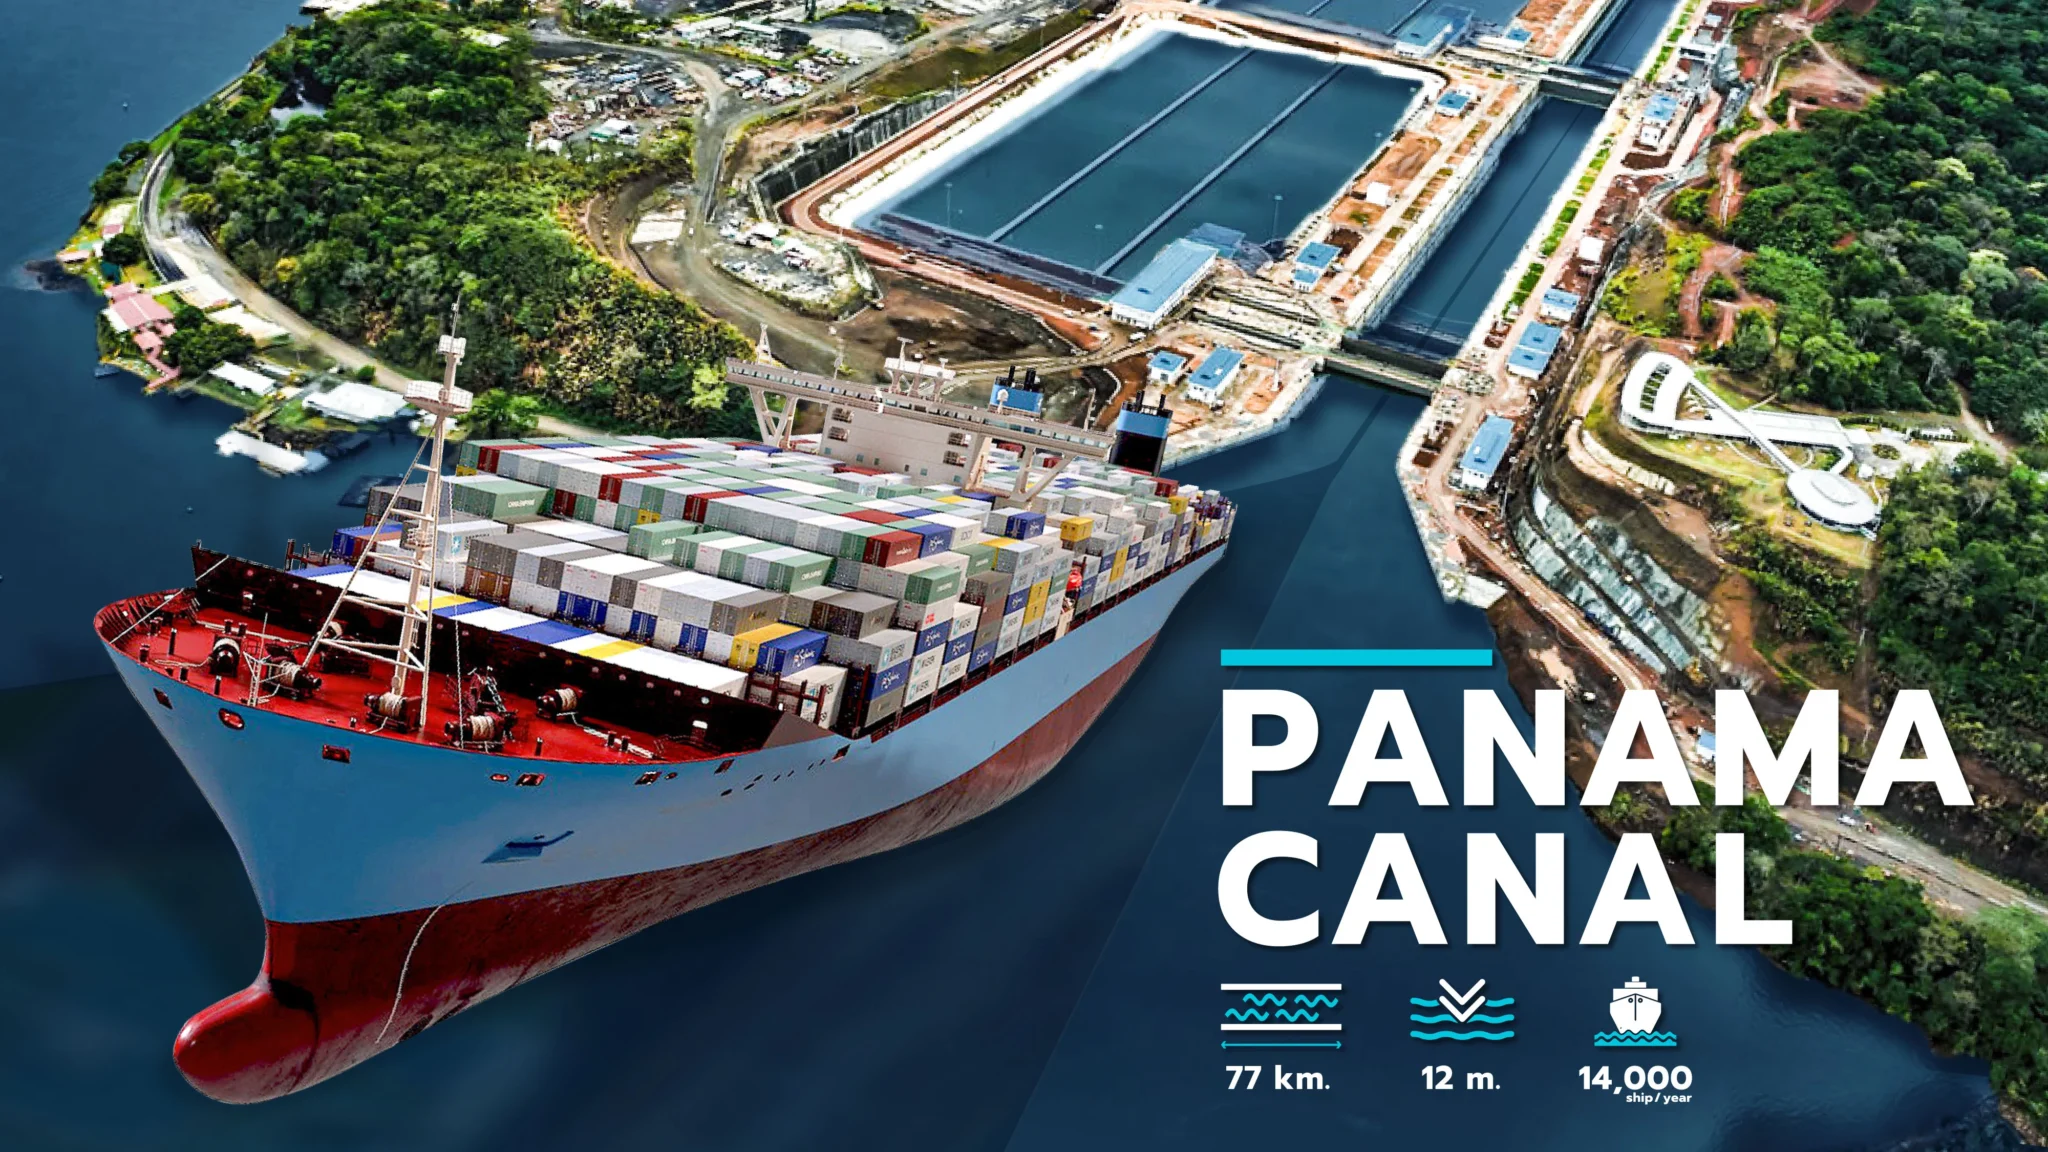 คลองปานามา (Panama Canal) หนึ่งในเส้นทางการเดินเรือสำคัญของโลก